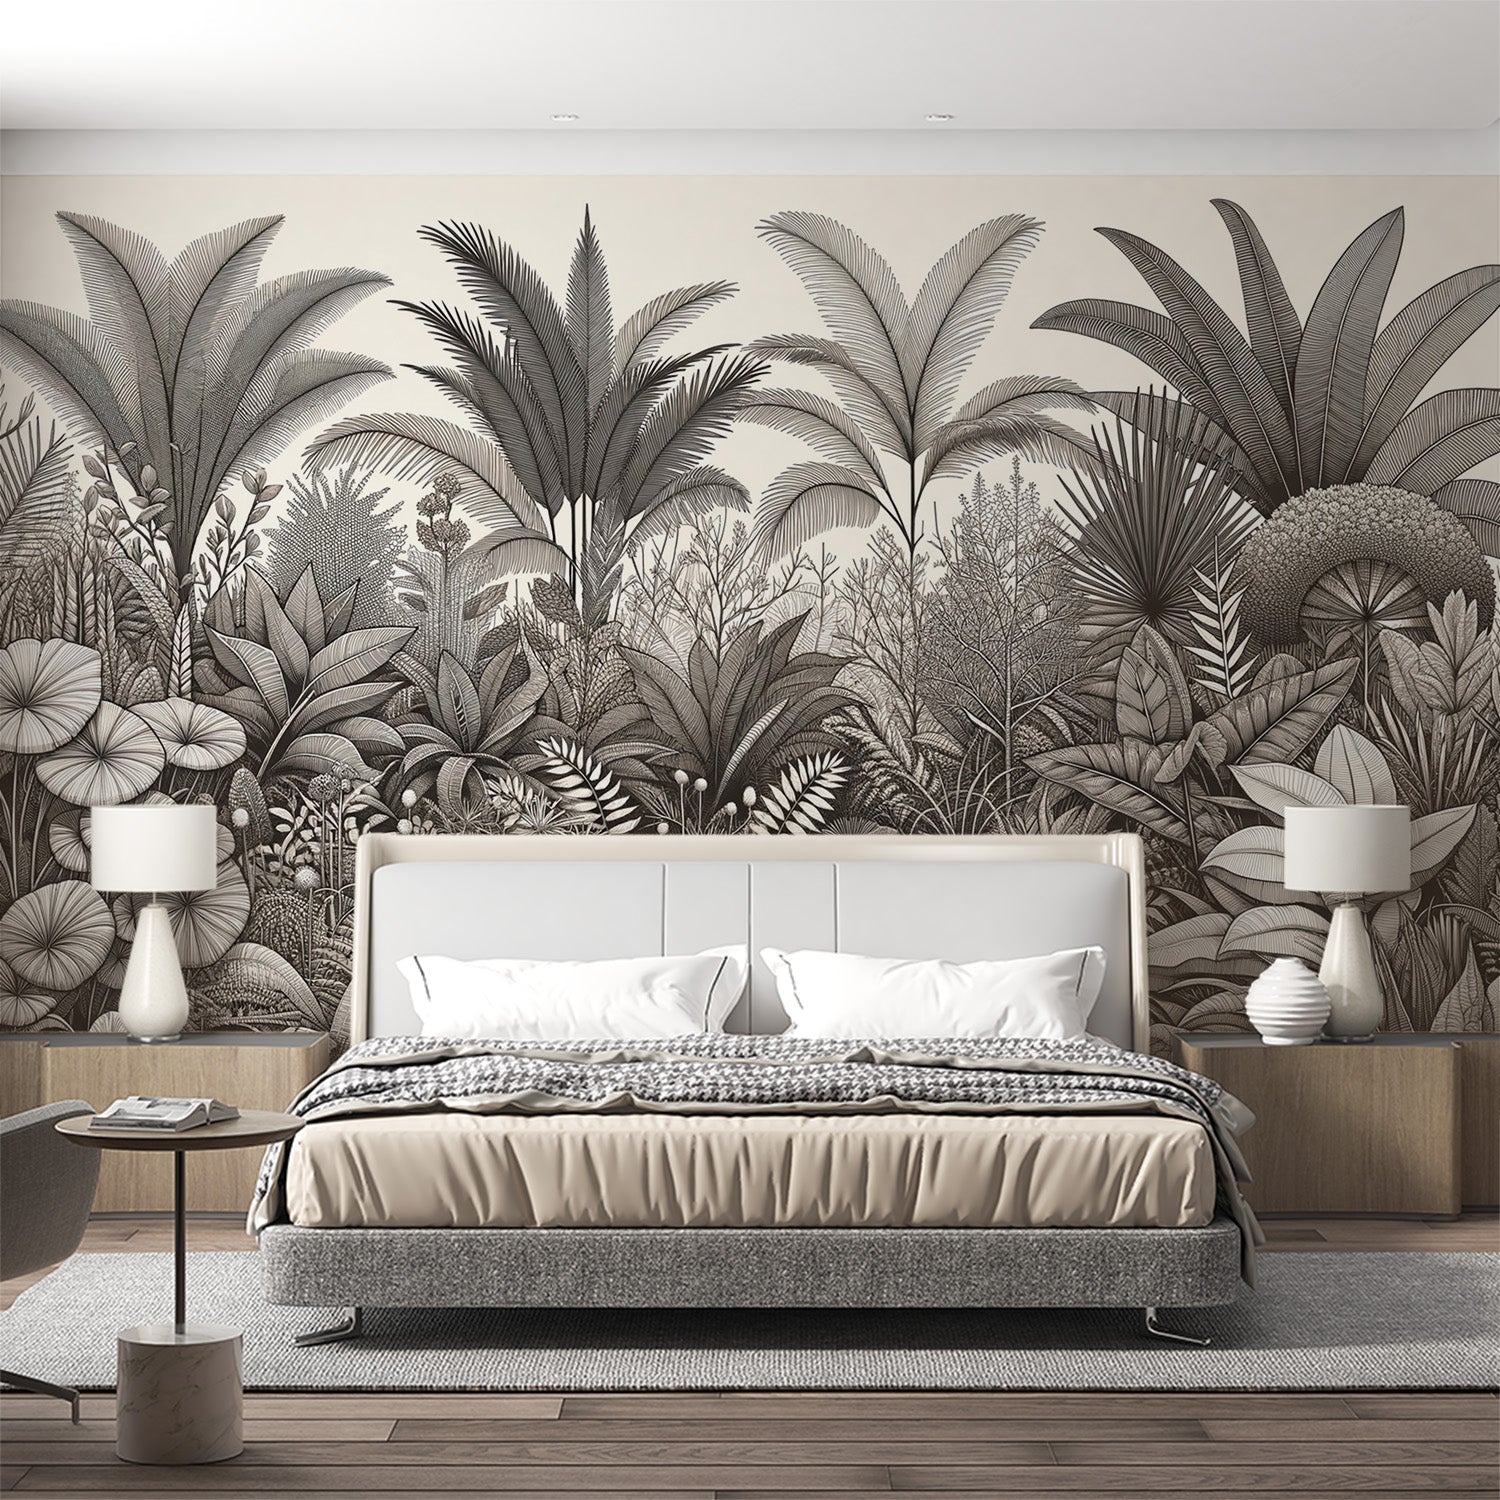  Papier peint tropical Diversité botanique en nuances de gris avec détails fins